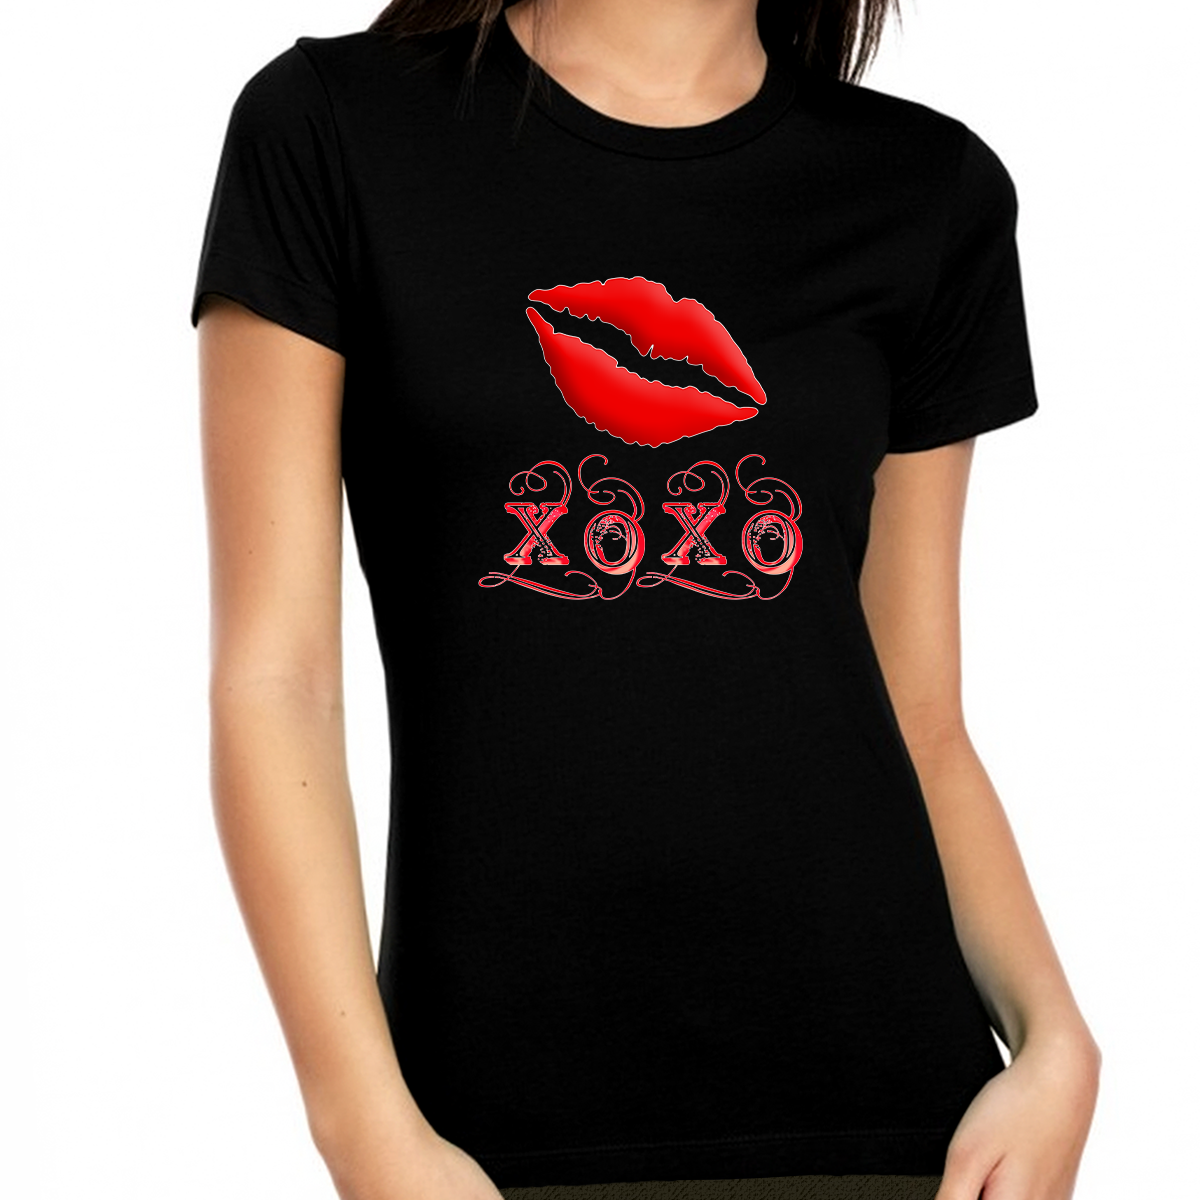 Valentine Shirts for Women - Valentines Day Shirts Women Valentines Day Gift - XOXO Shirt